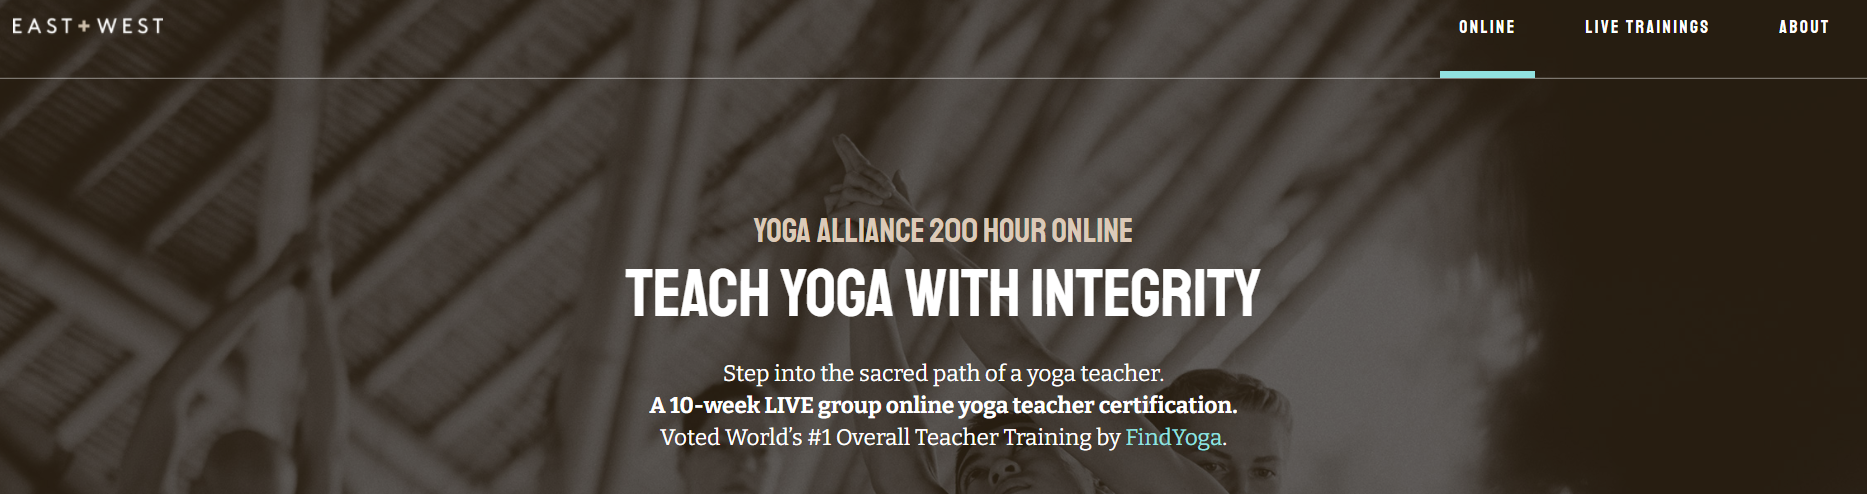 East West Yoga Teacher Training